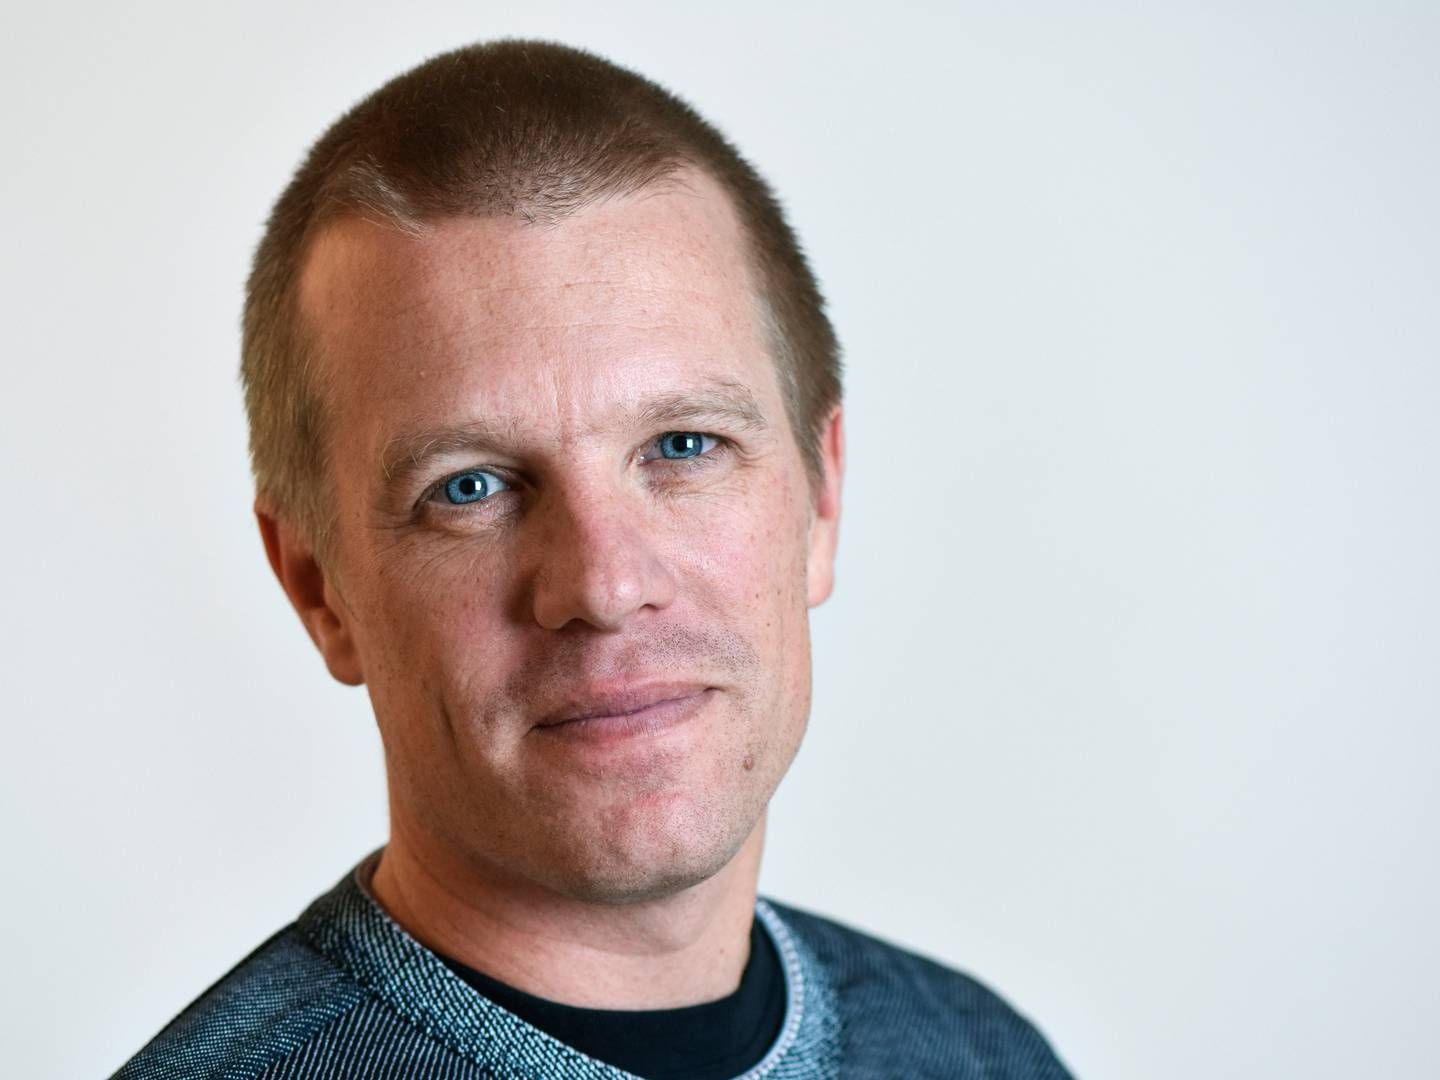 Adm. direktør og medstifter i Mag Interactive Daniel Hesselberg. | Foto: PR/Mag Interactive